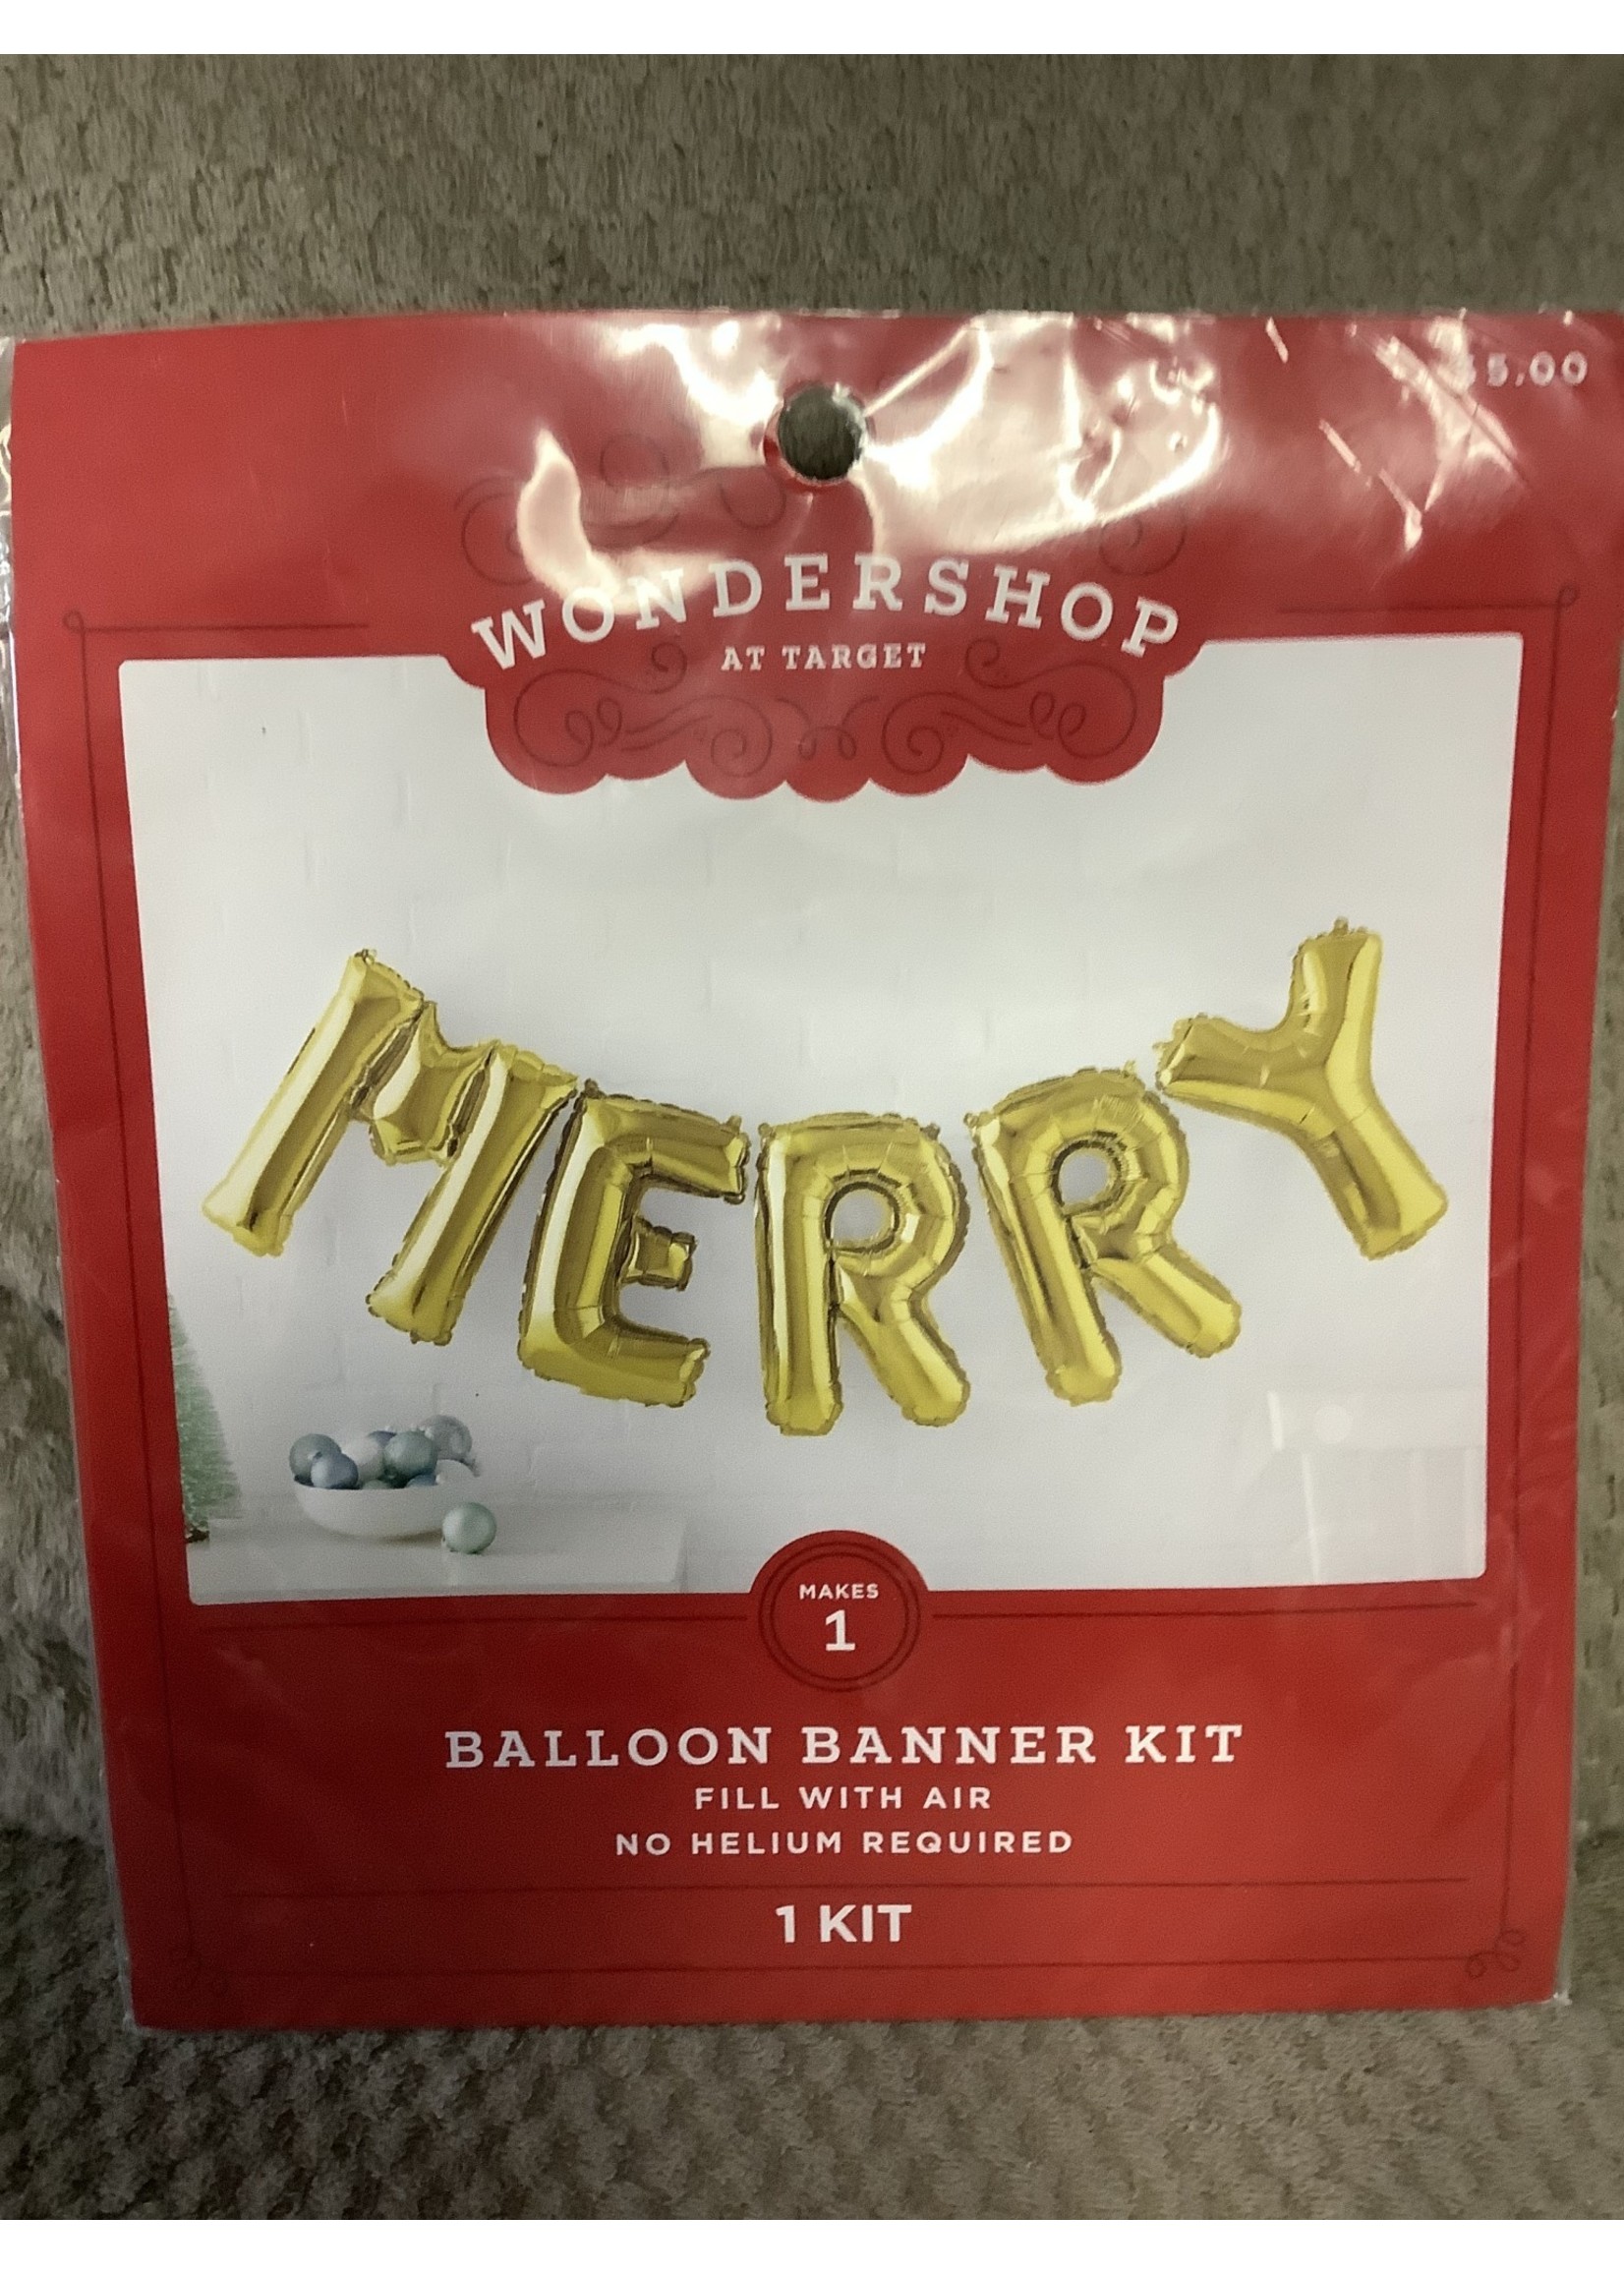 Merry Balloon Garland Kit - WondershopΓäó